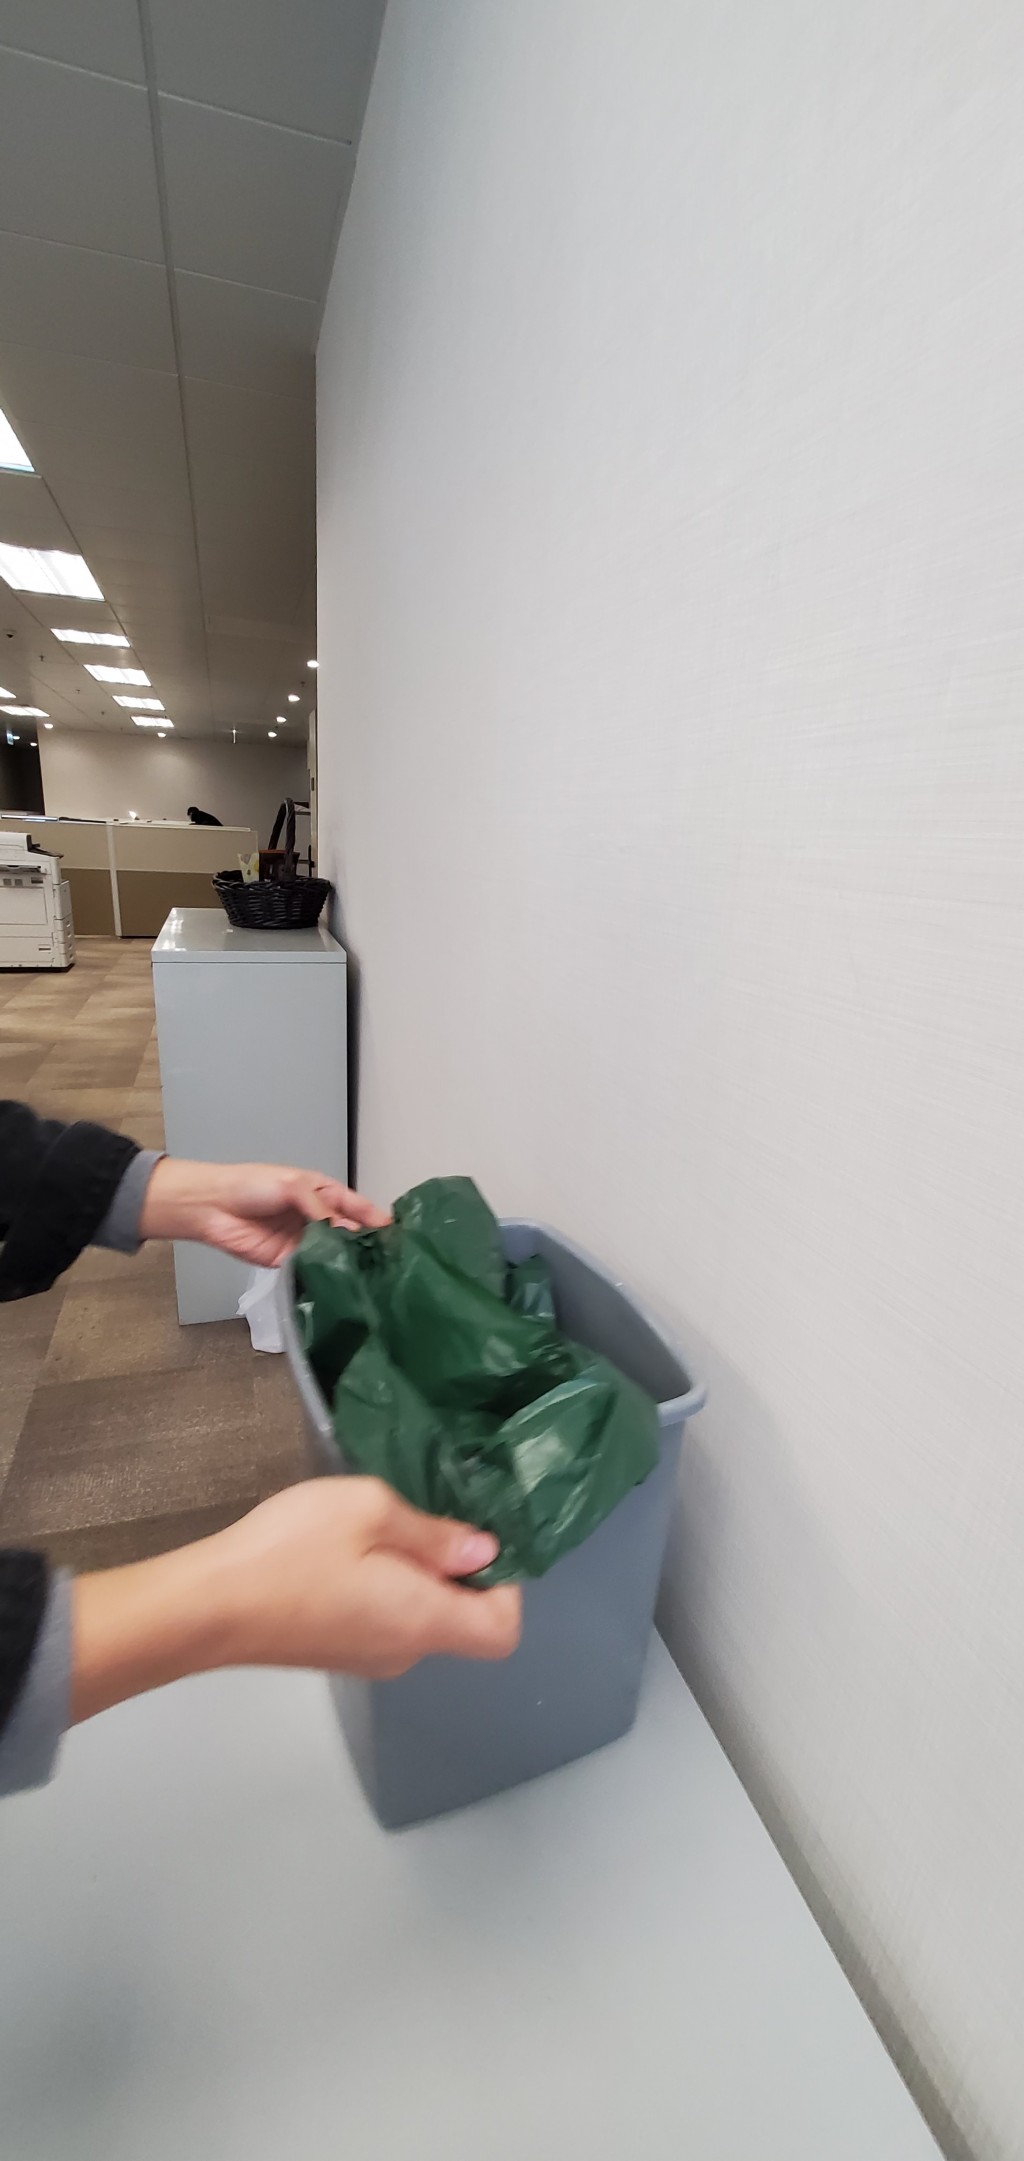 15升装指定袋能套进一般办公室垃圾桶。